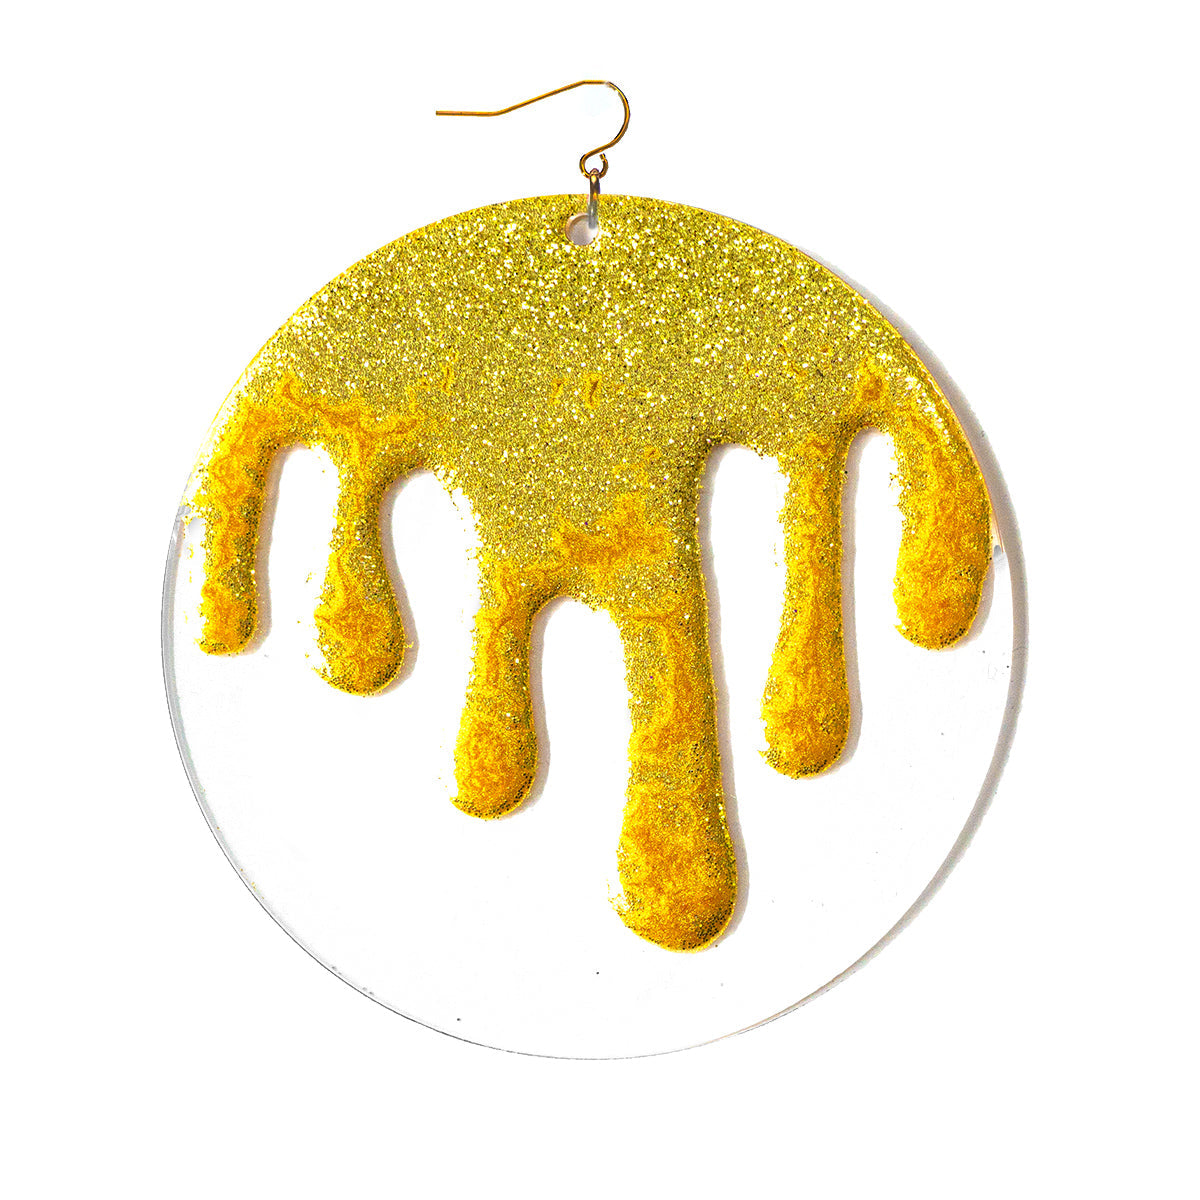 Goo Earrings - Gold Glitter Deanna Dot Store 